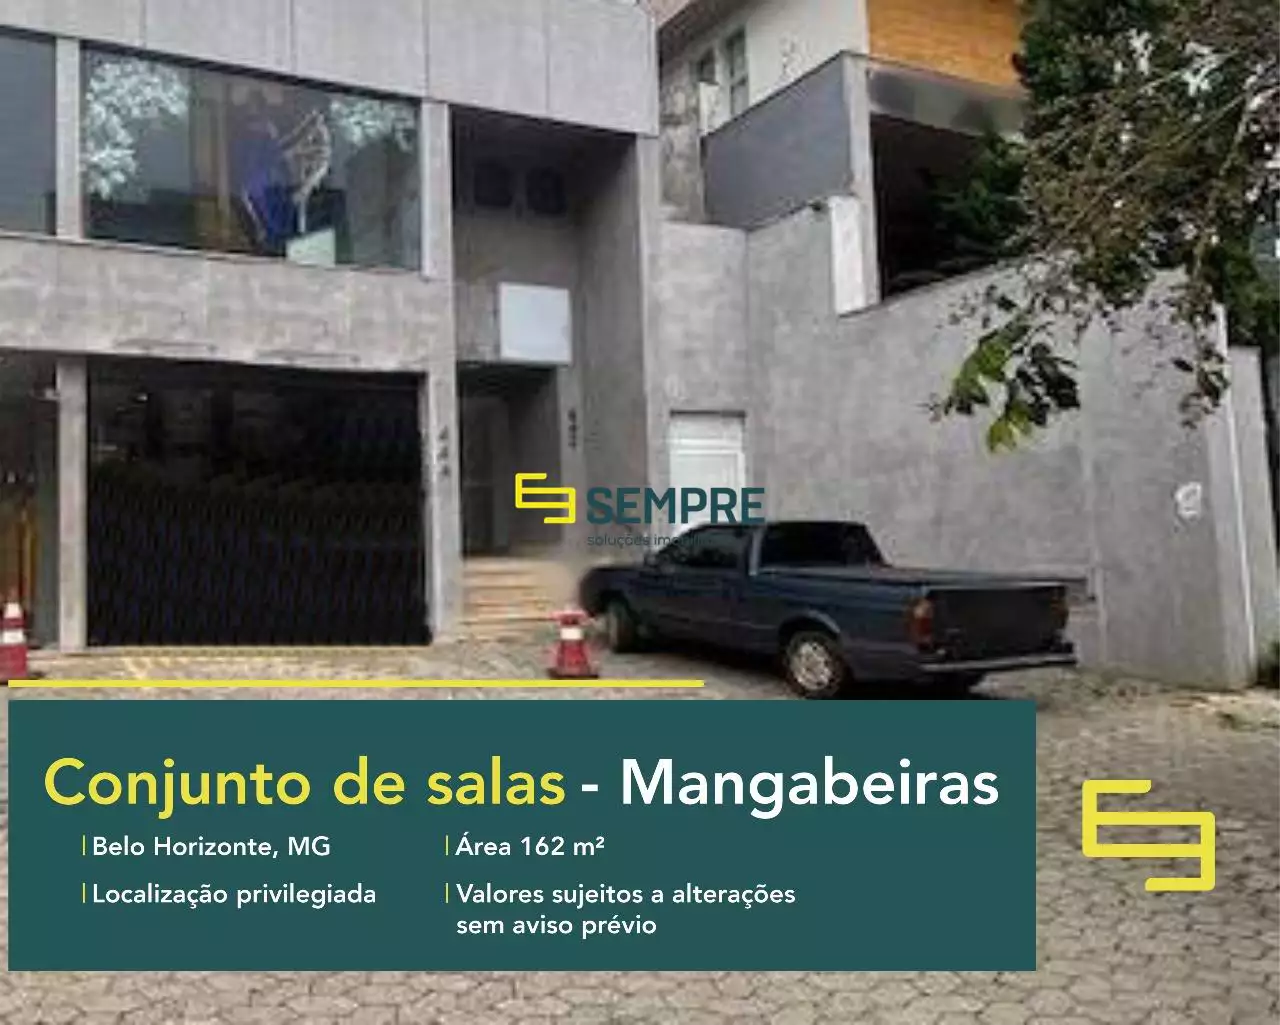 Conjunto de salas para alugar no Mangabeiras em Belo Horizonte, excelente localização. O estabelecimento comercial conta com área de 162 m².